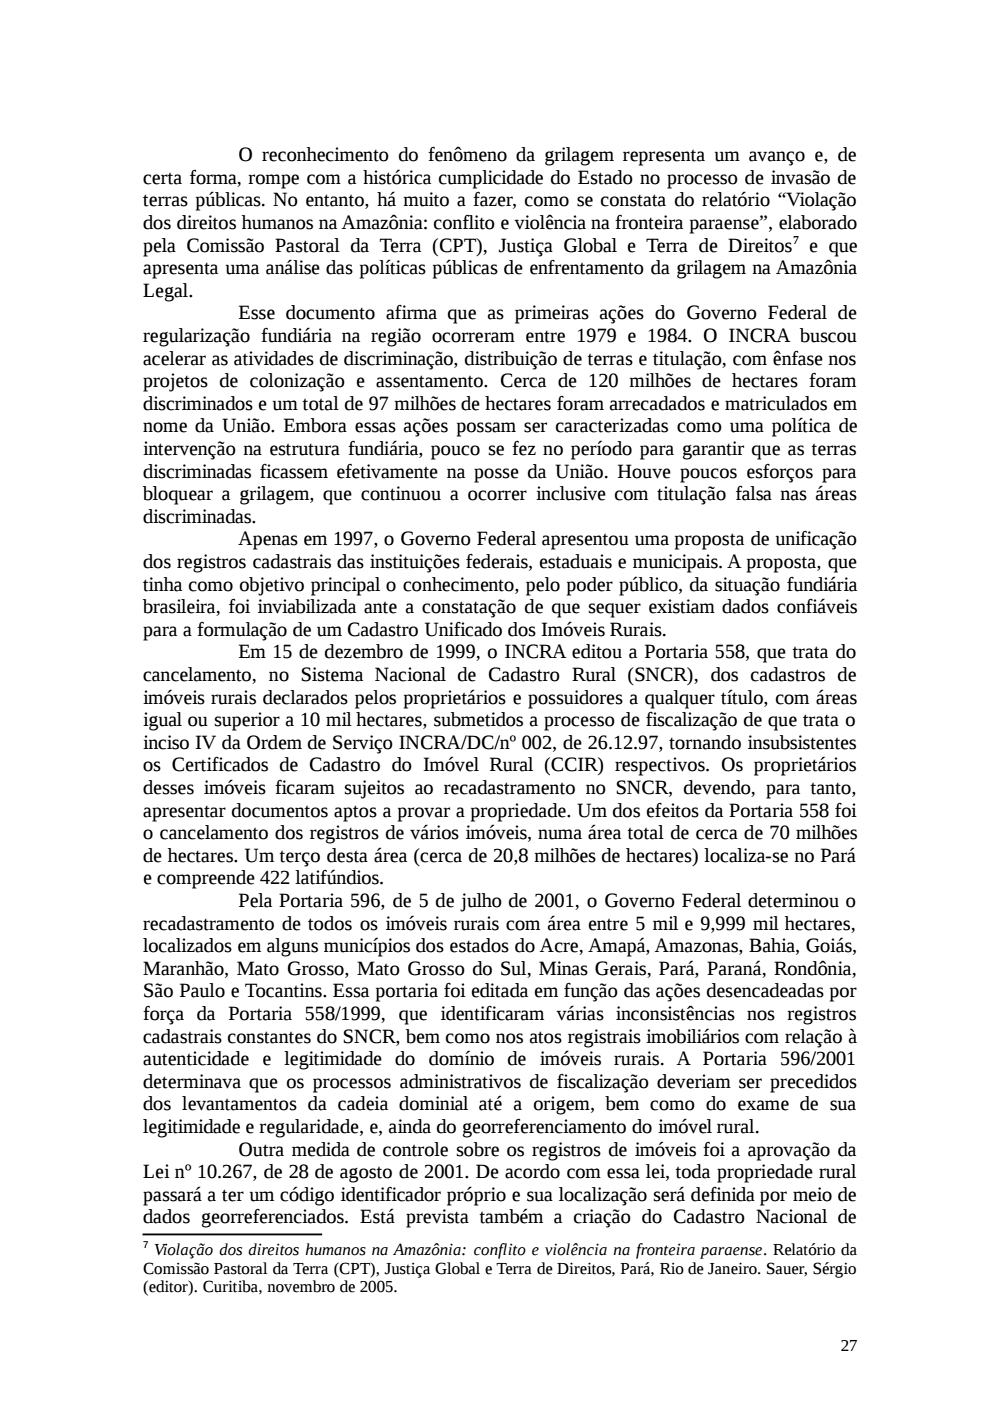 Page 27 from Relatório final da comissão